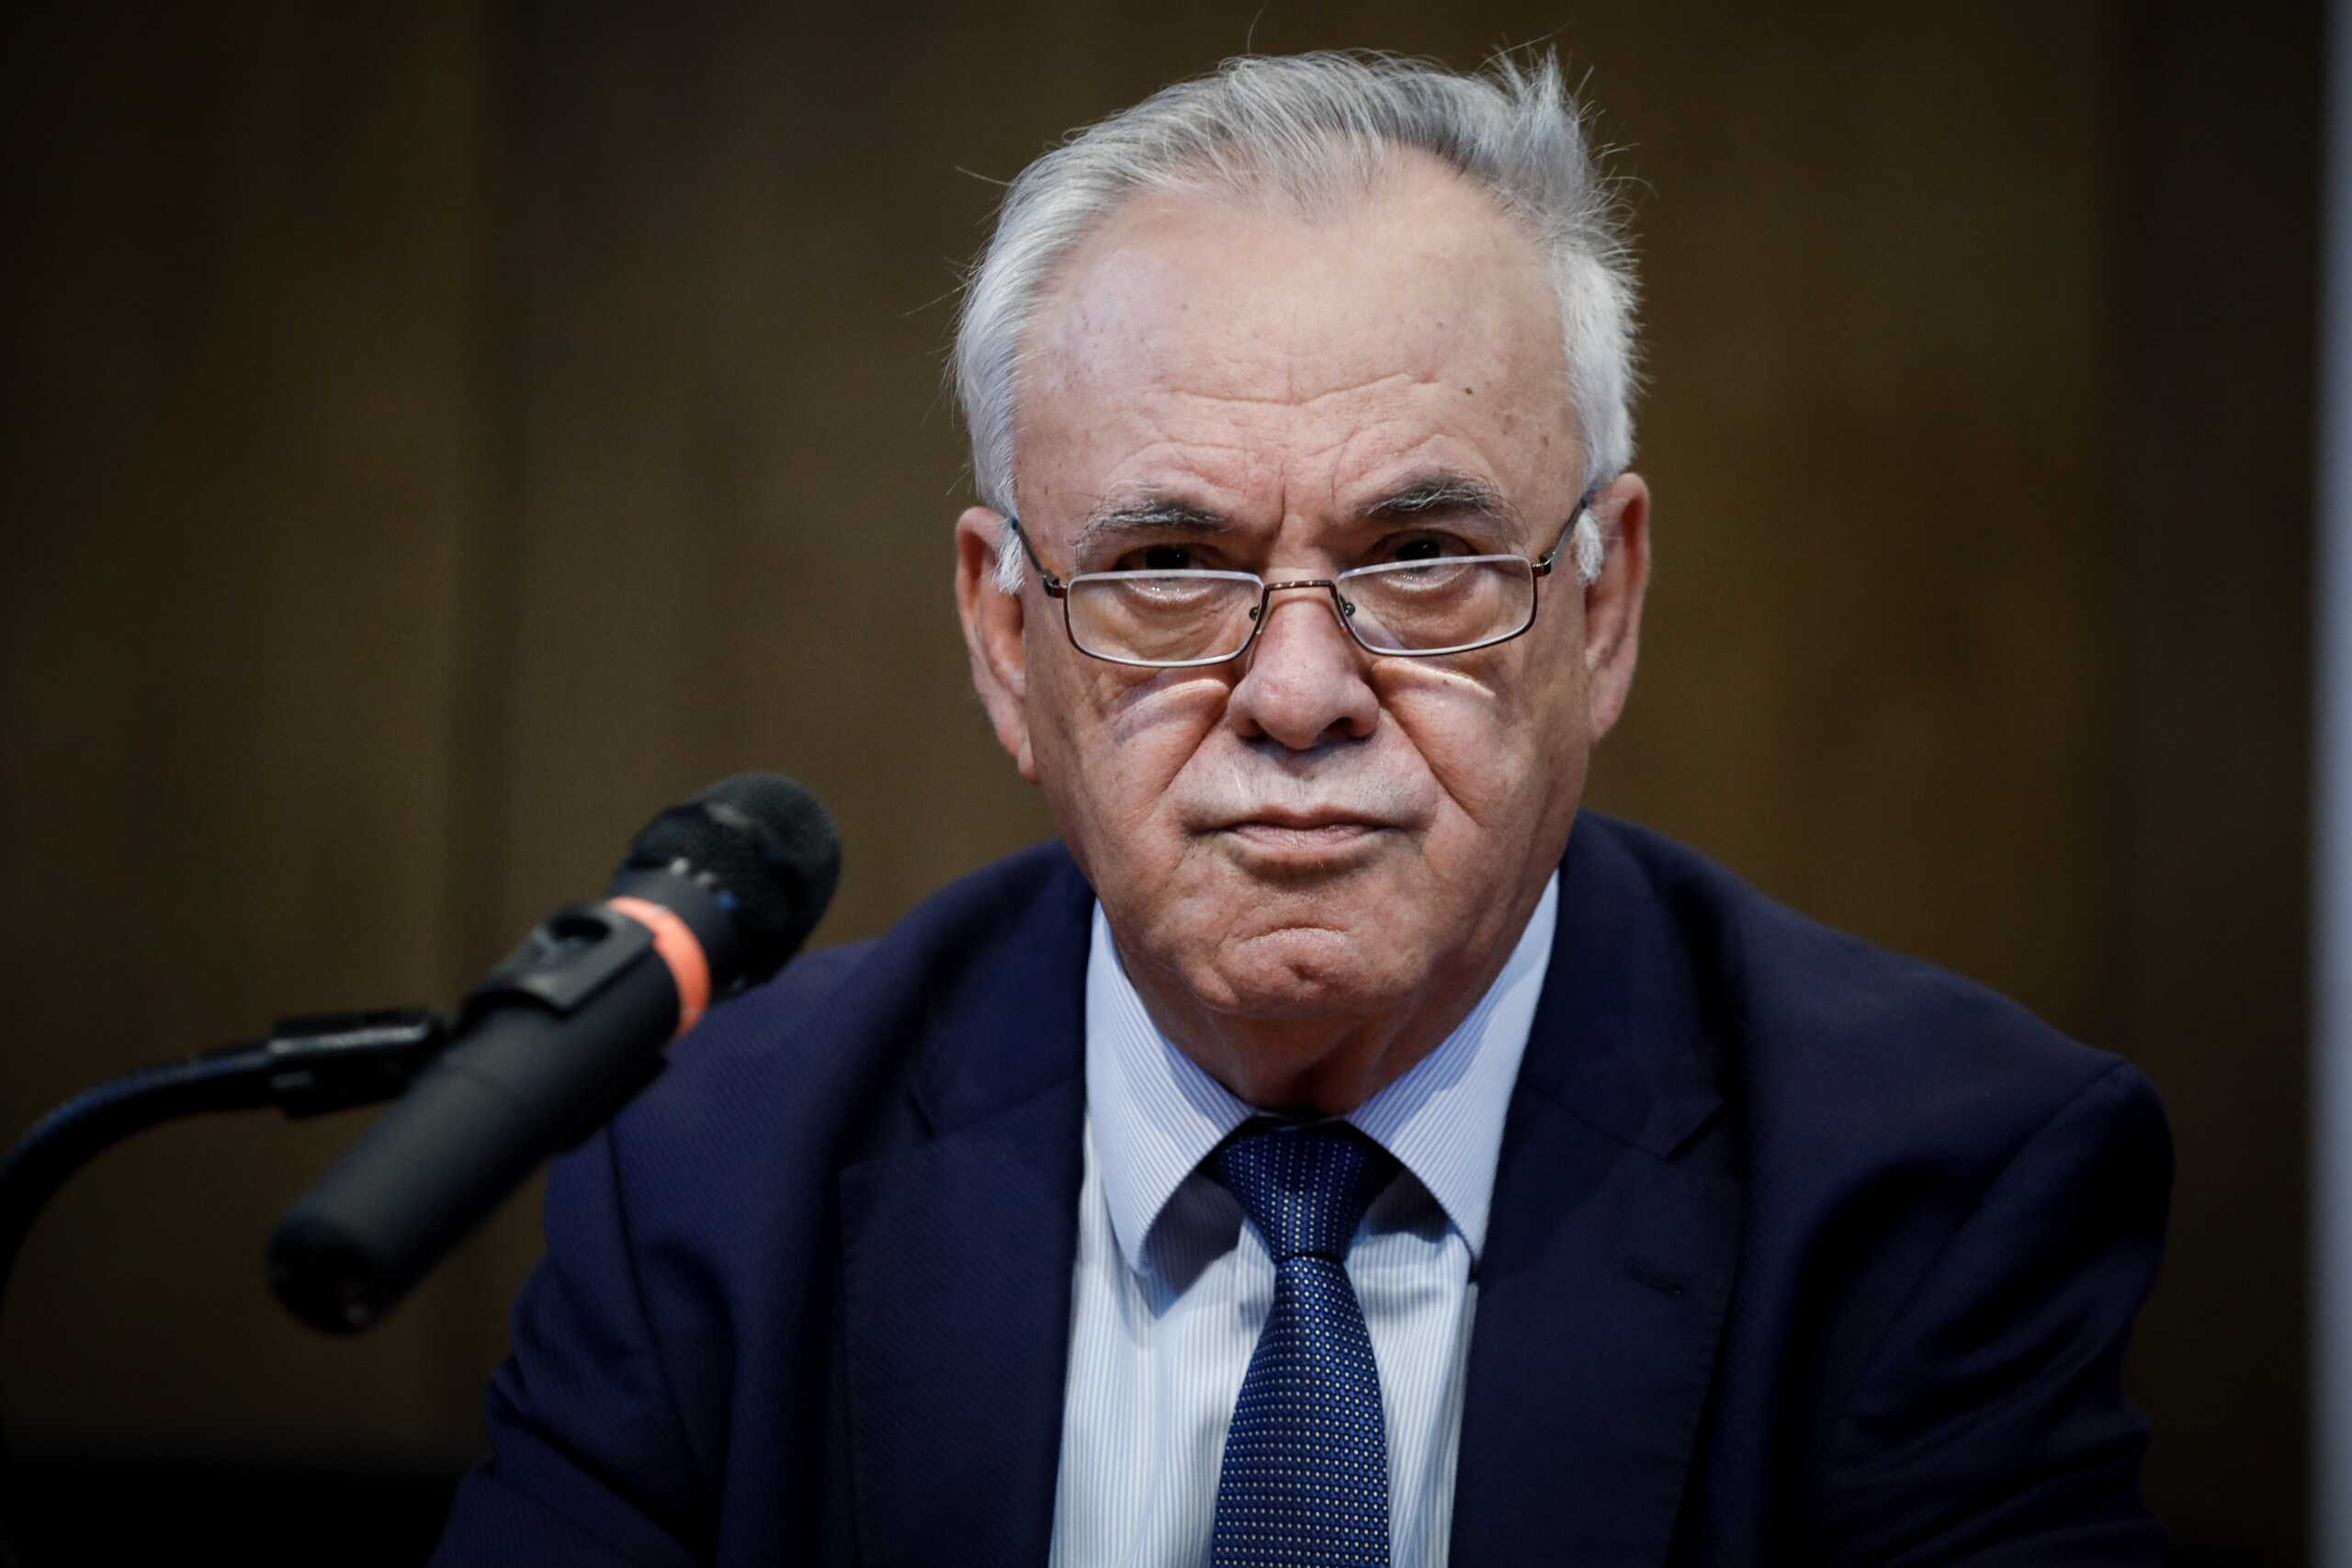 Ο Γιάννης Δραγασάκης παραιτείται από την Κεντρική Επιτροπή του ΣΥΡΙΖΑ αλλά παραμένει μέλος του κόμματος